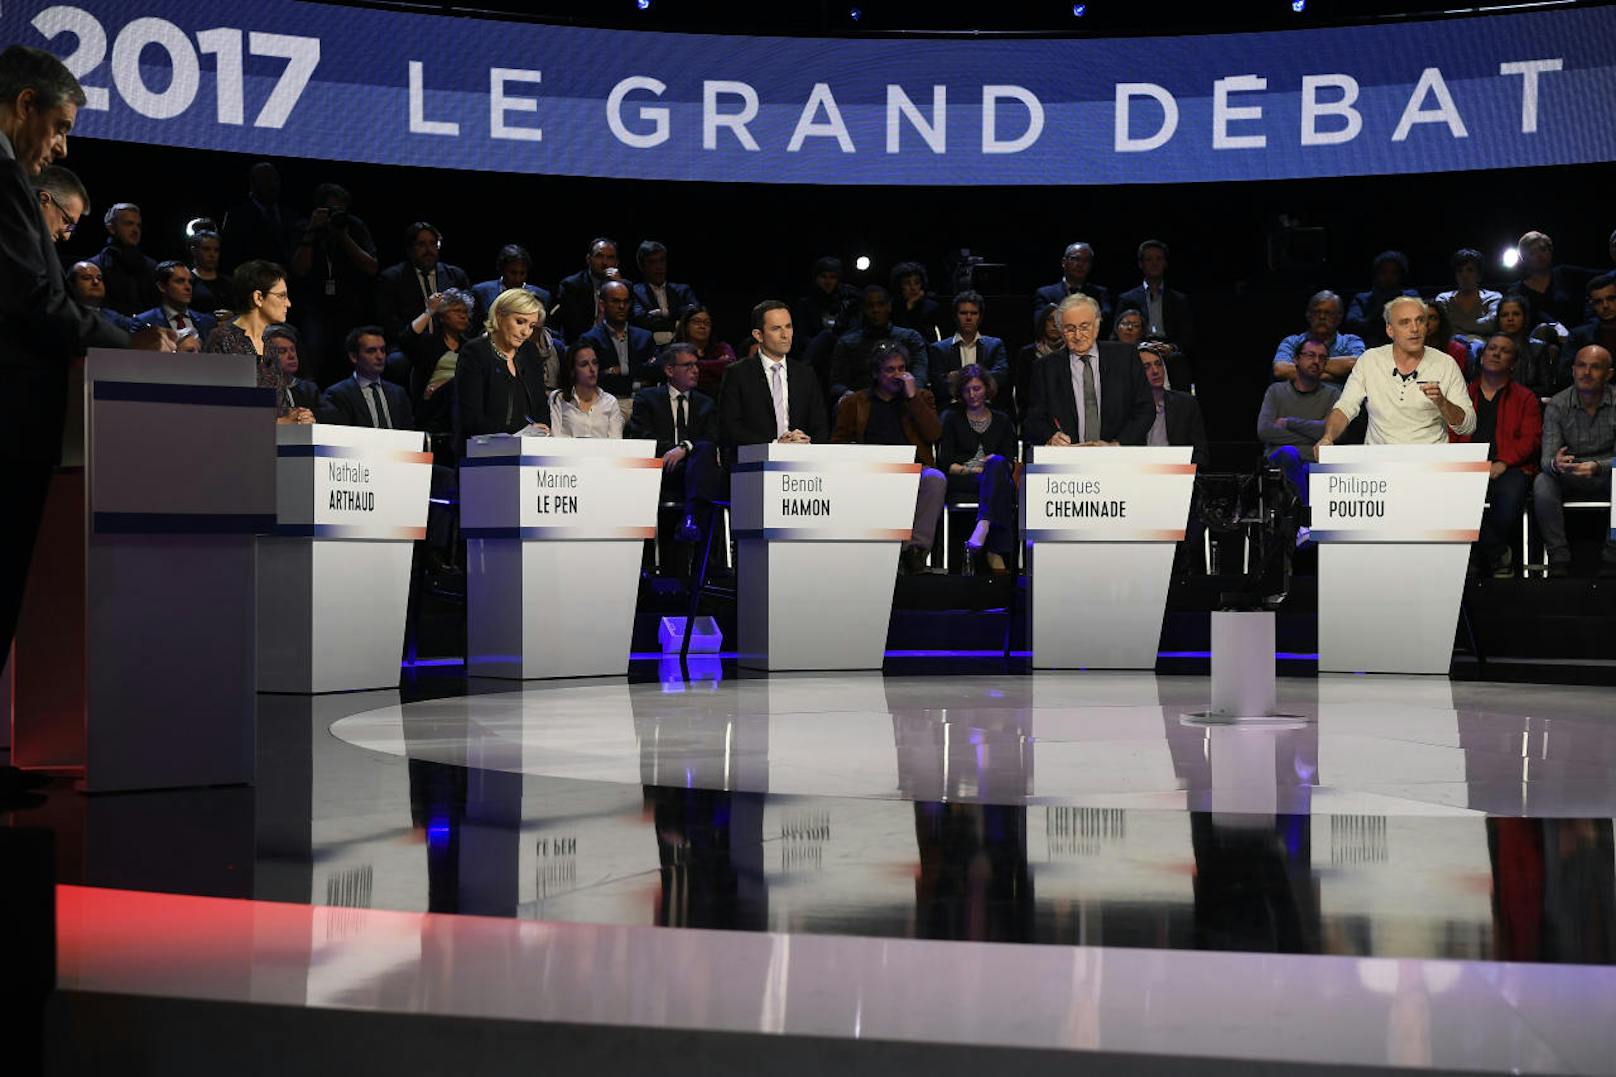 Erstmals stellten sich alle zehn Kandidaten einer TV-Debatte, die live übertragen wurde.